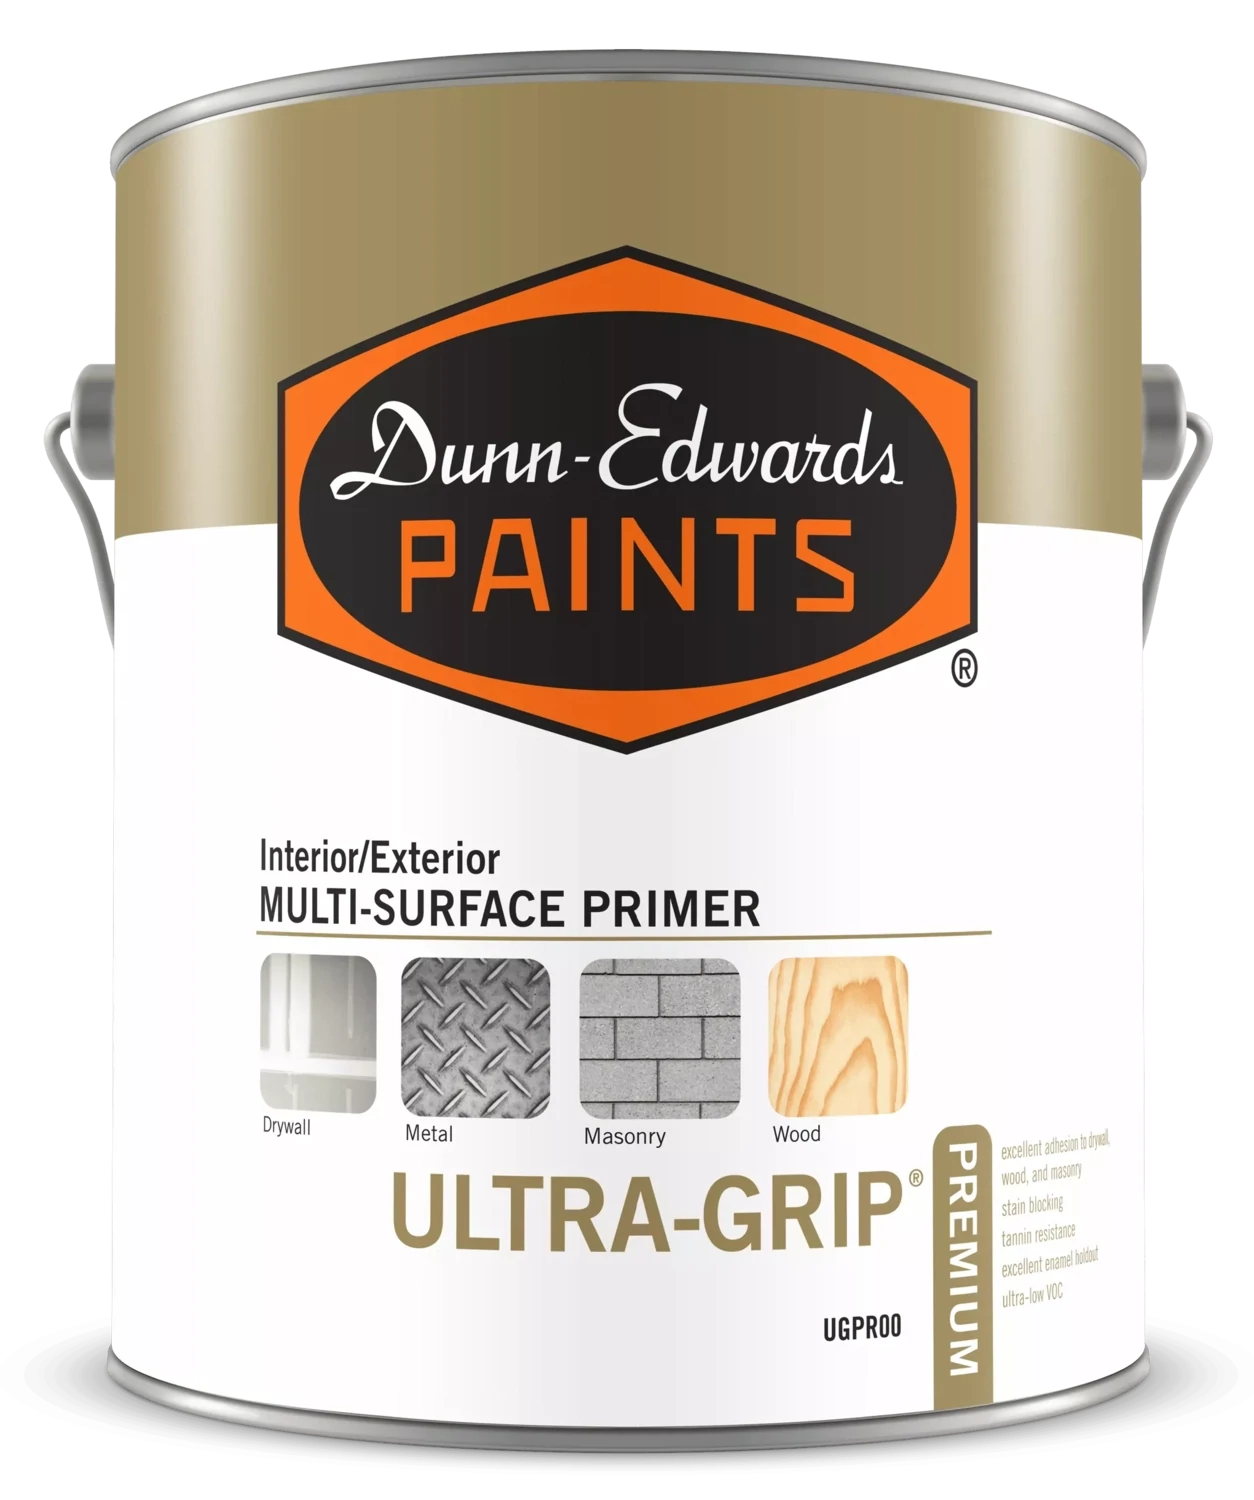 Ultra-Grip Premium Interior/Exterior Multi-Surface Primer